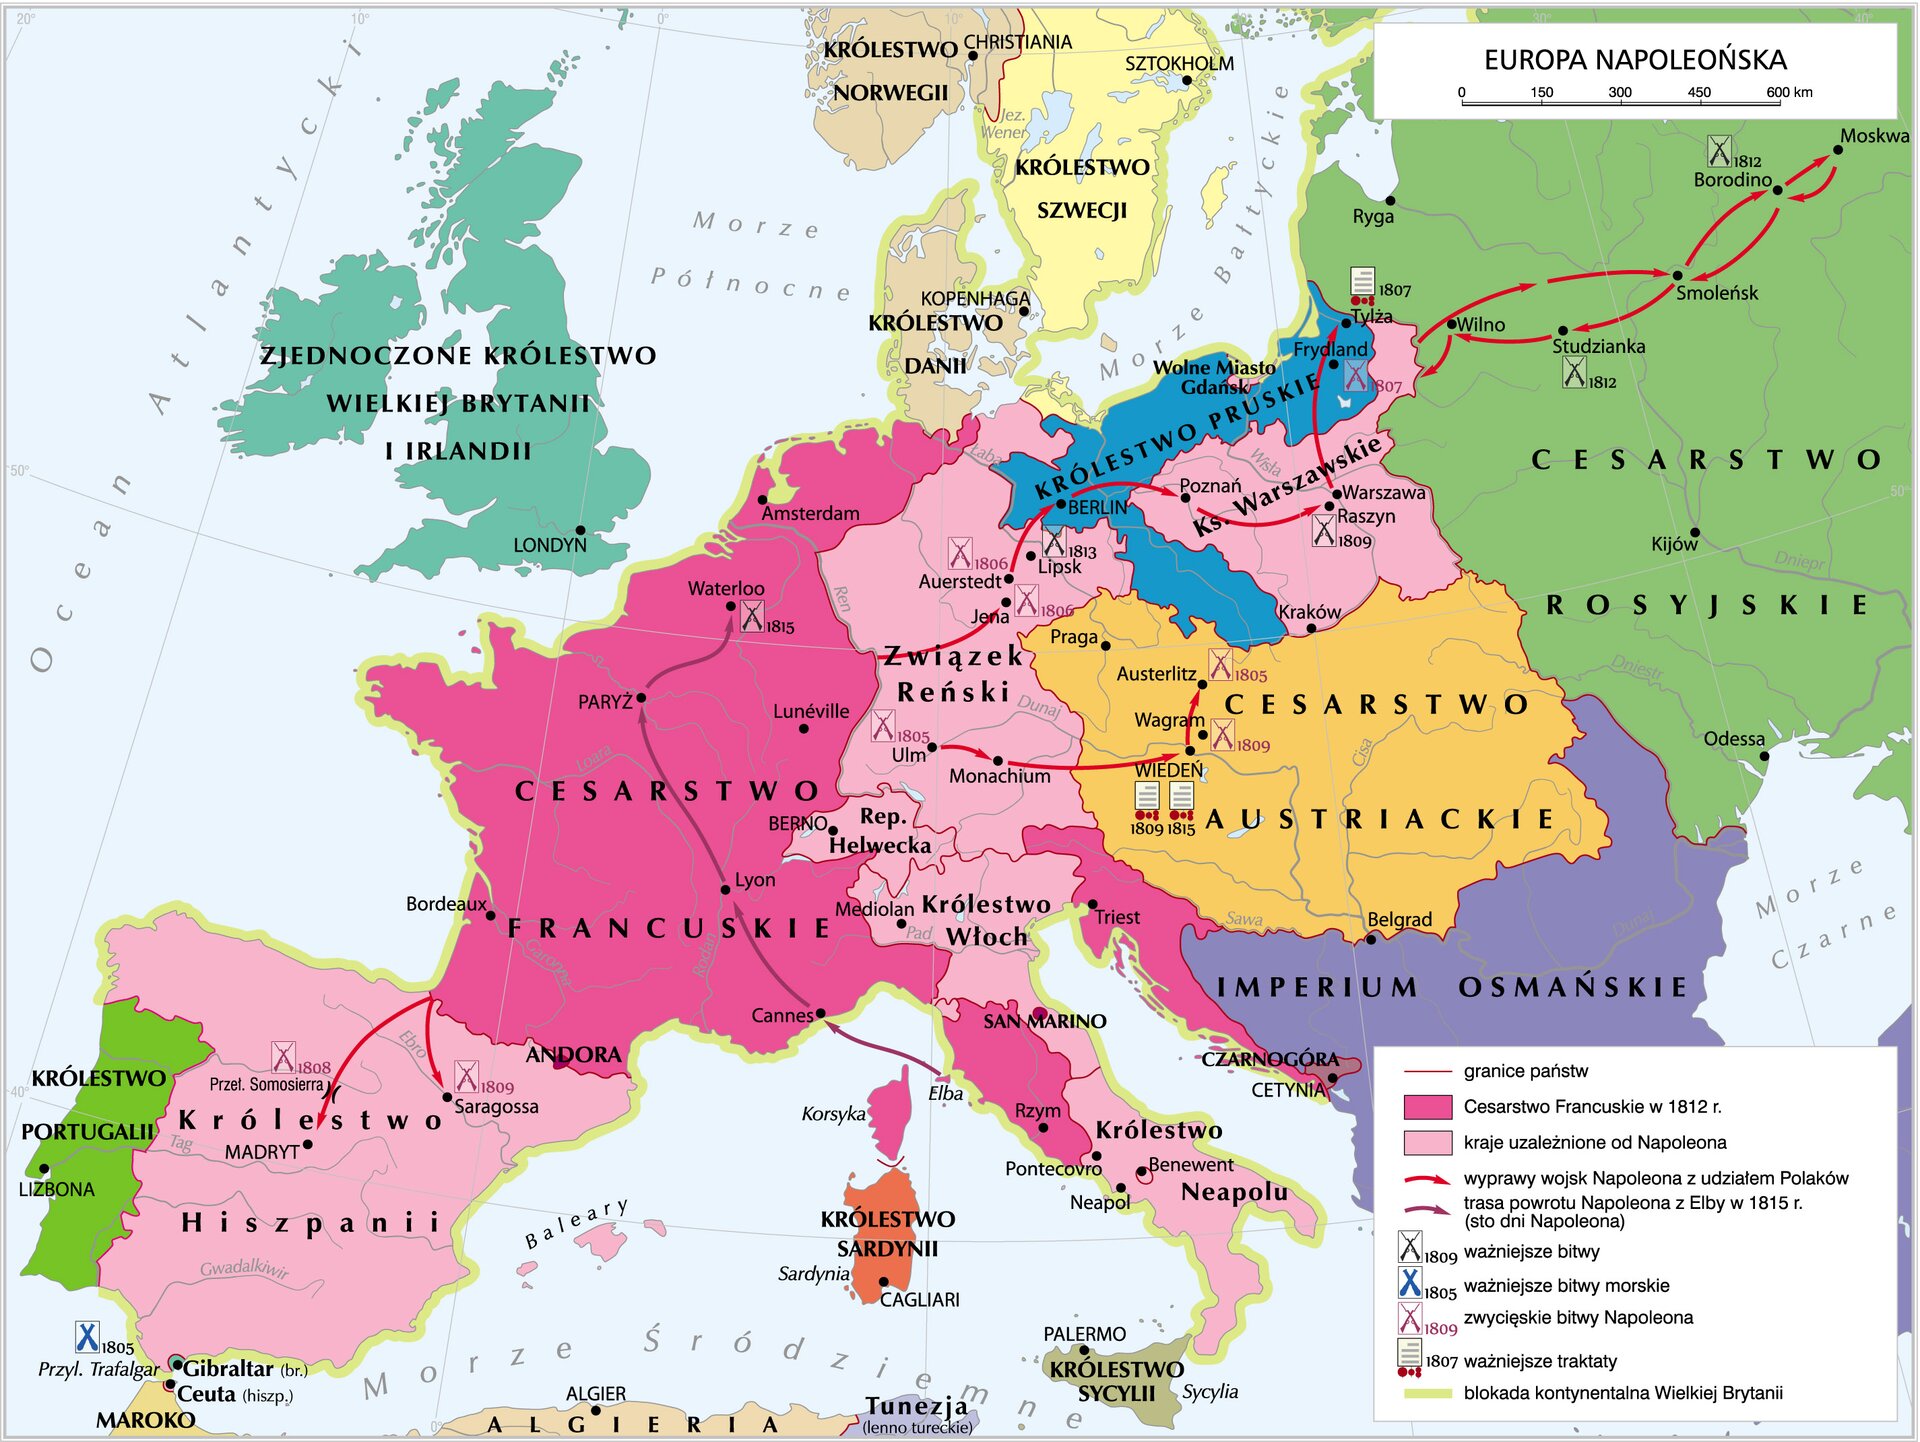 Mapa Europy w czasach napoleońskich, z zaznaczeniem m.in. najważniejszych bitew i zwycięstw Napoleona.